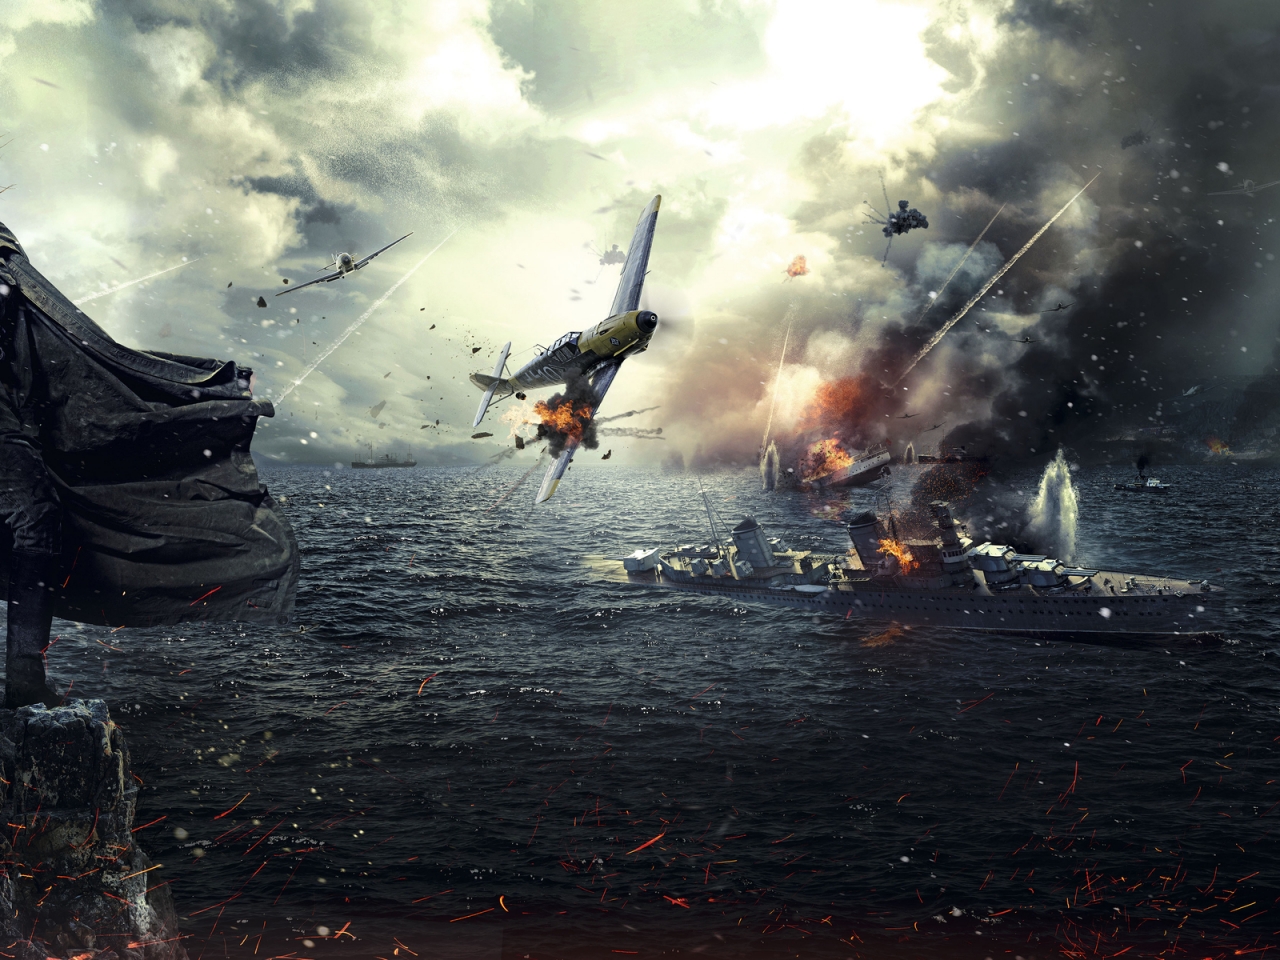 Battle for Sevastopol 2015 for 1280 x 960 resolution